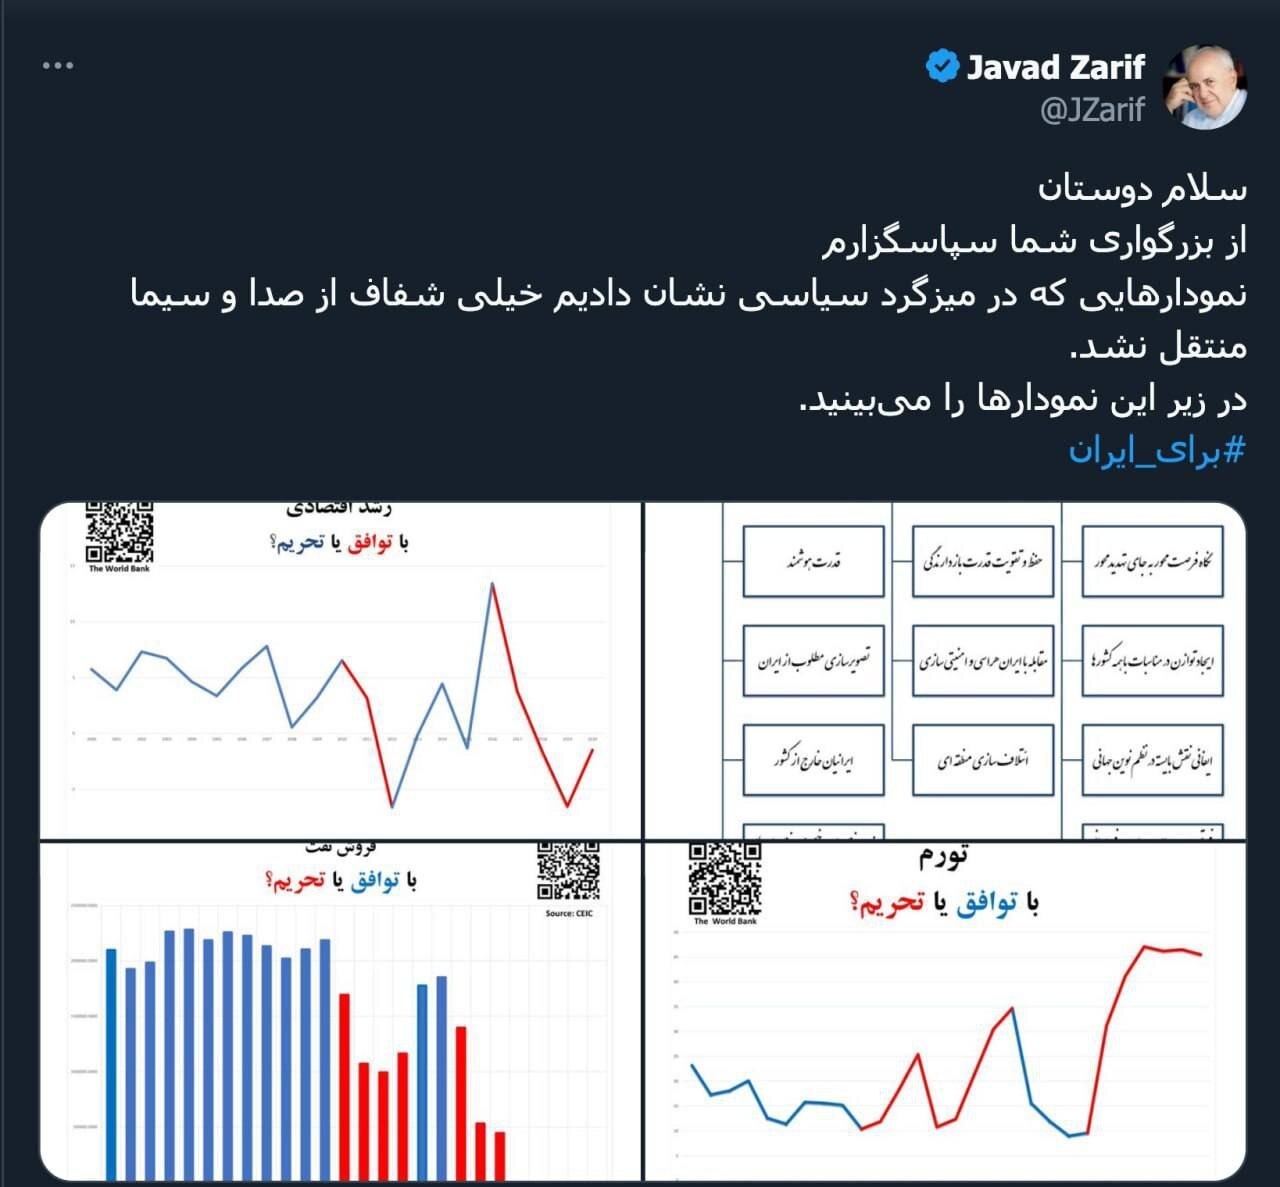 ظریف نسخه اصلی نمودارهای وضعیت زندگی مردم در تحریم را منتشر کرد 2